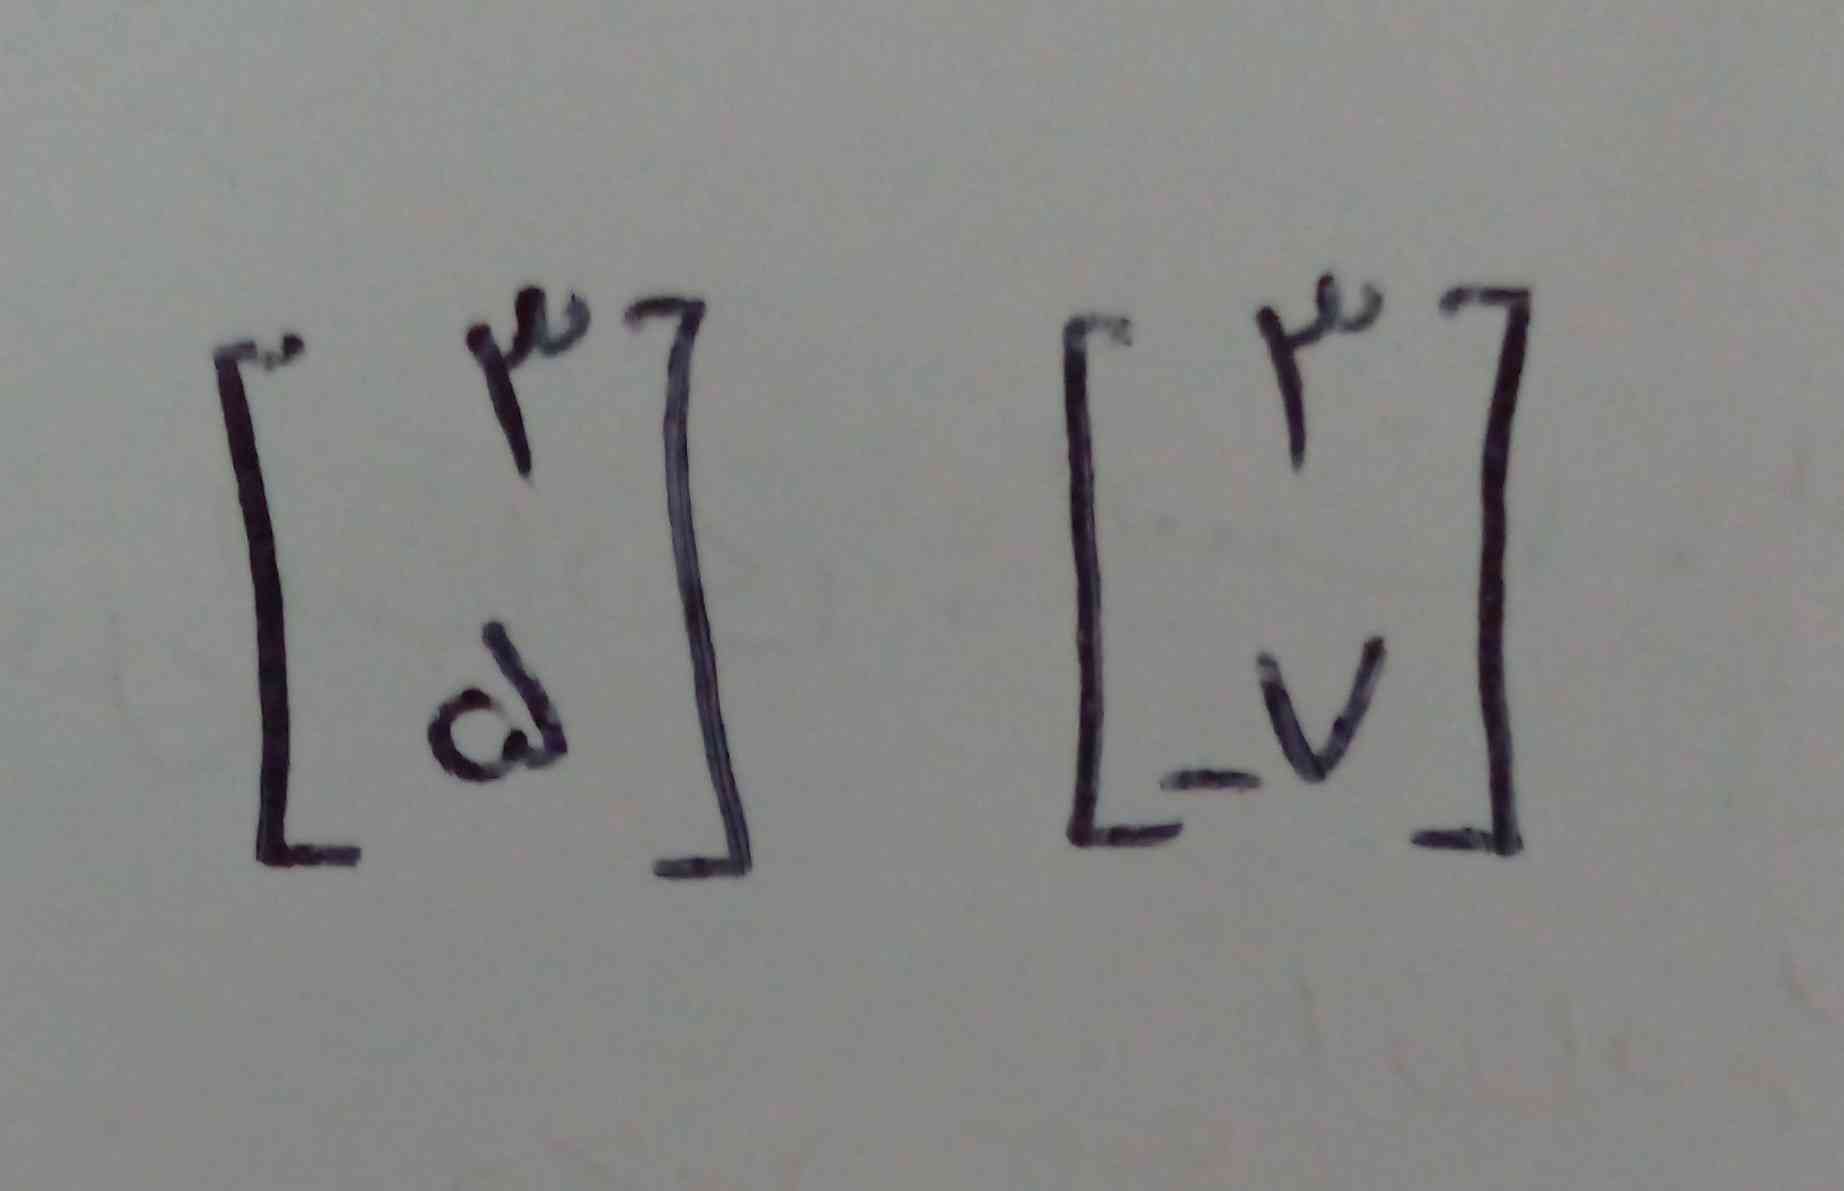 معادله خط رو بنویسین